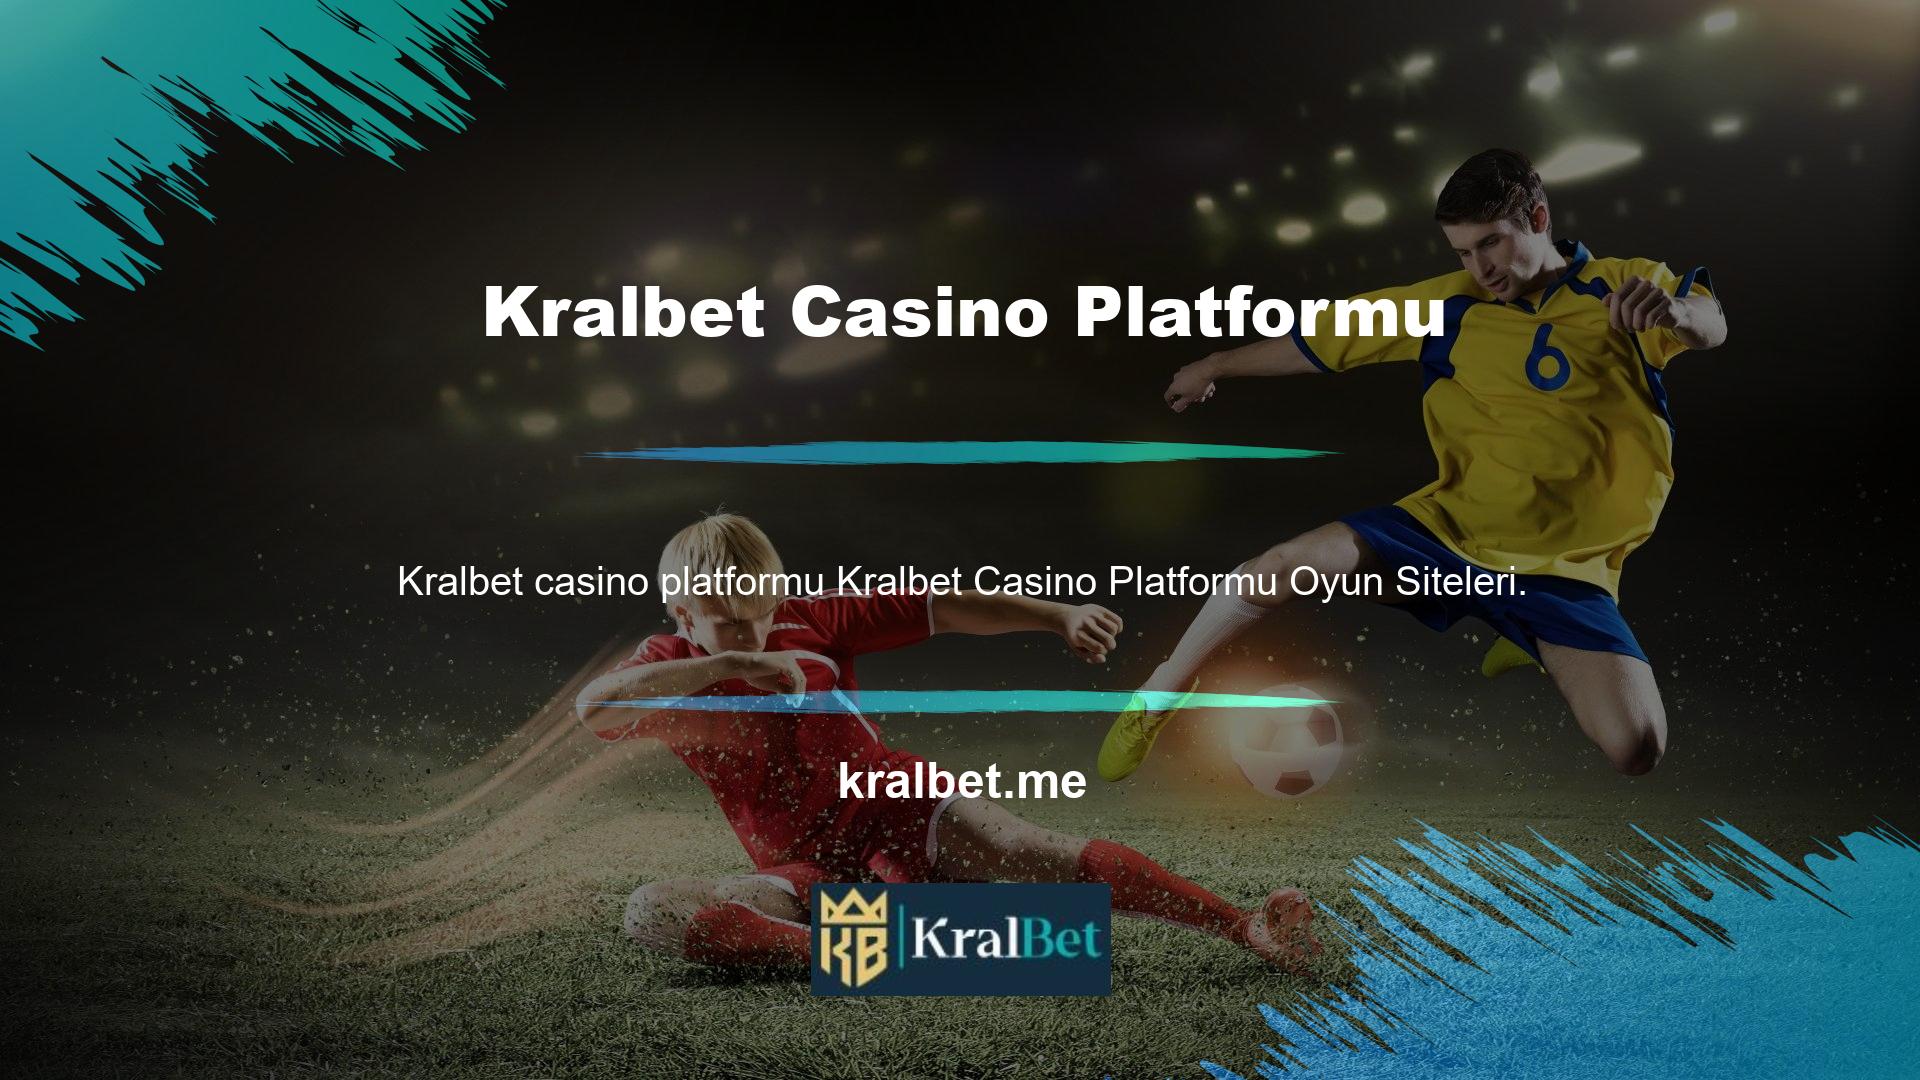 Türkiye'nin güvenilir online casino platformu Kralbet, her türlü spor etkinliği için tüm bahis seçeneklerini sunmaktadır